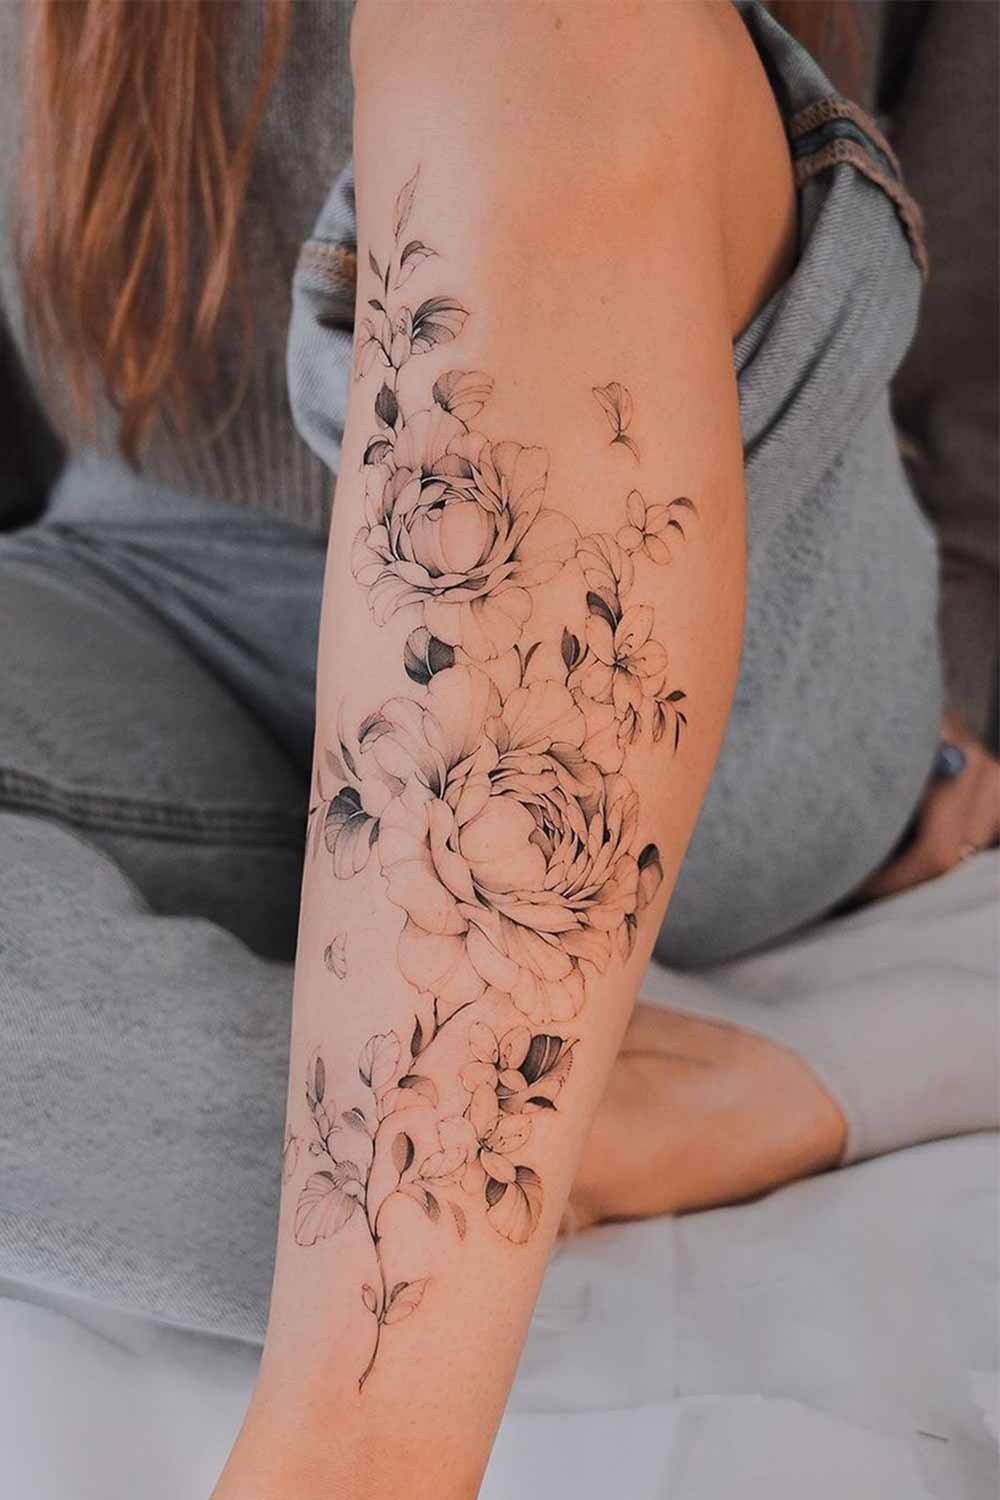 3-Tatuagem-floral-na-perna-@karolinaszymanska_tattoo 